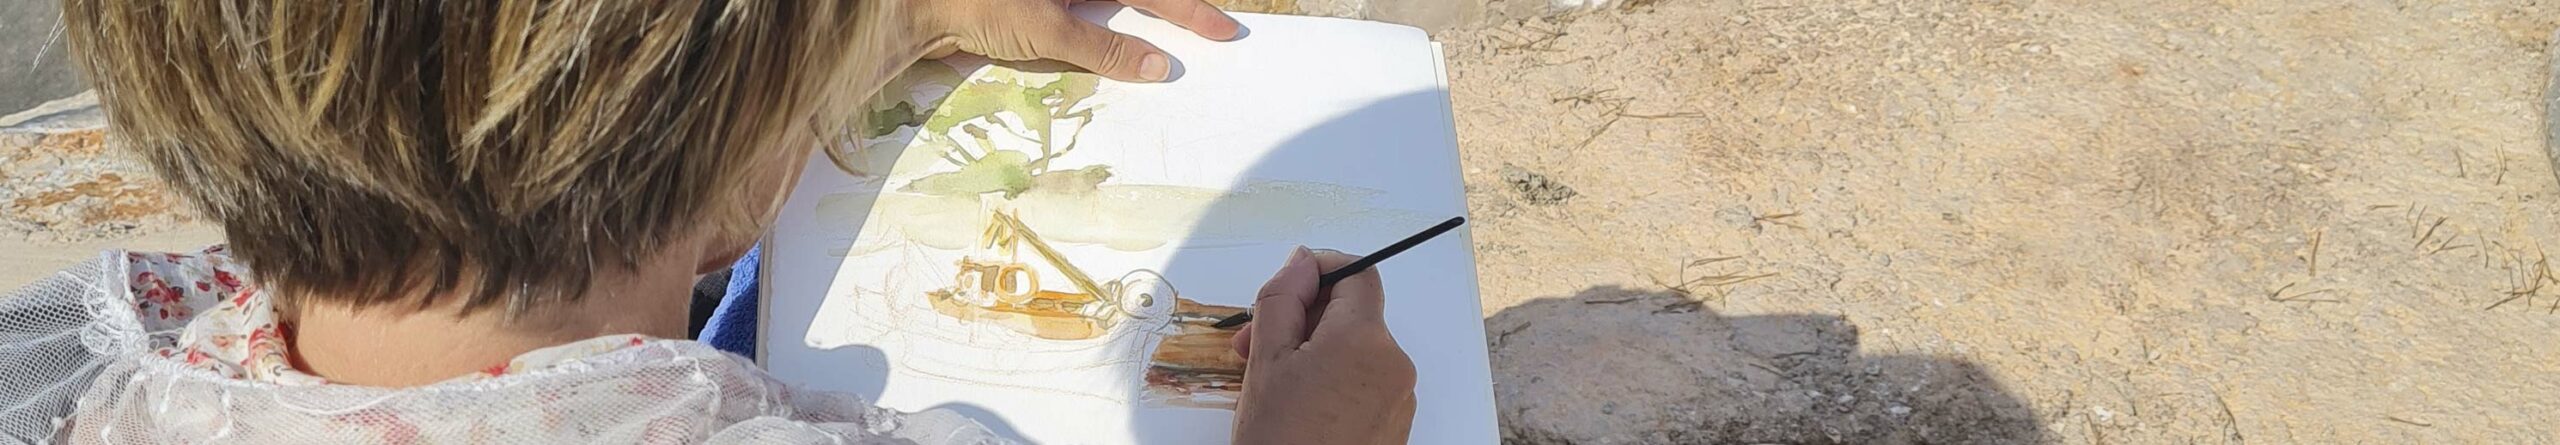 Les cours de dessin et peinture en extérieur de l'atelier Art en Ciel à La Rochelle